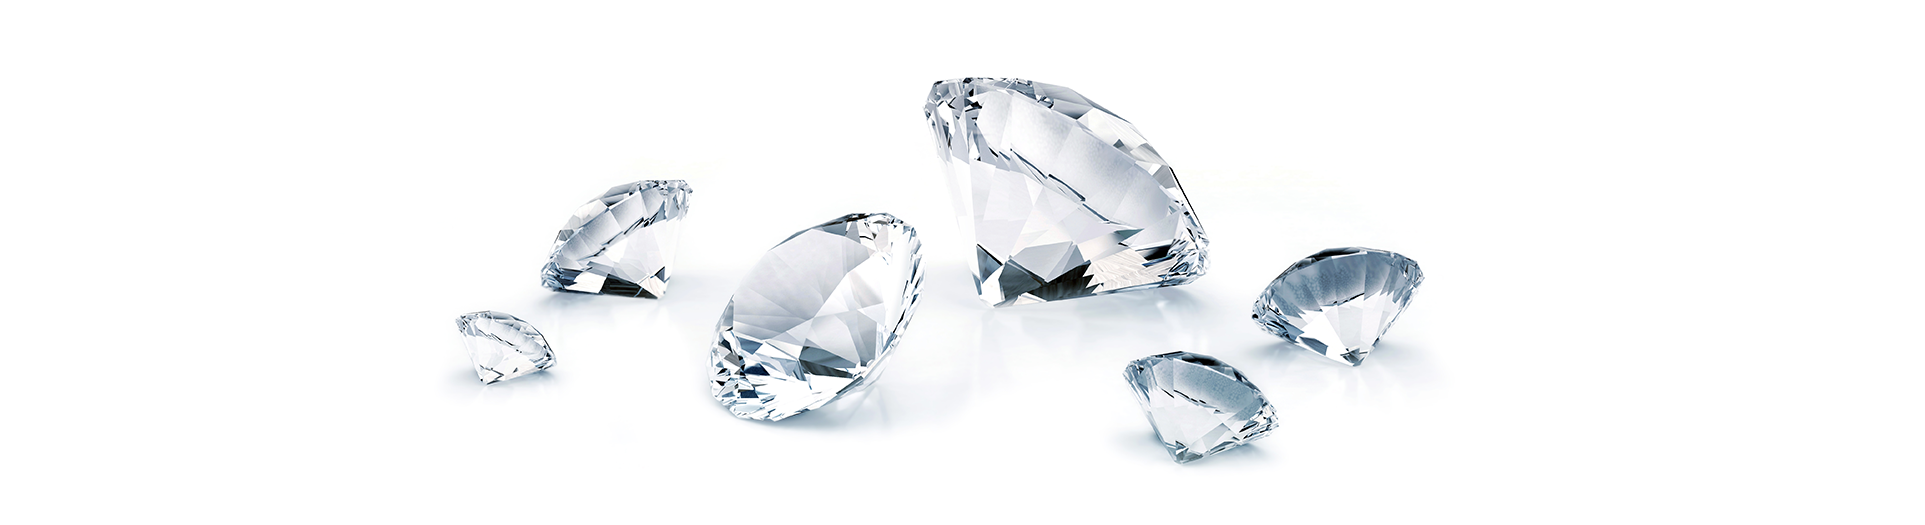 세계 최초, 1기압에서 다이아몬드 생산 성공